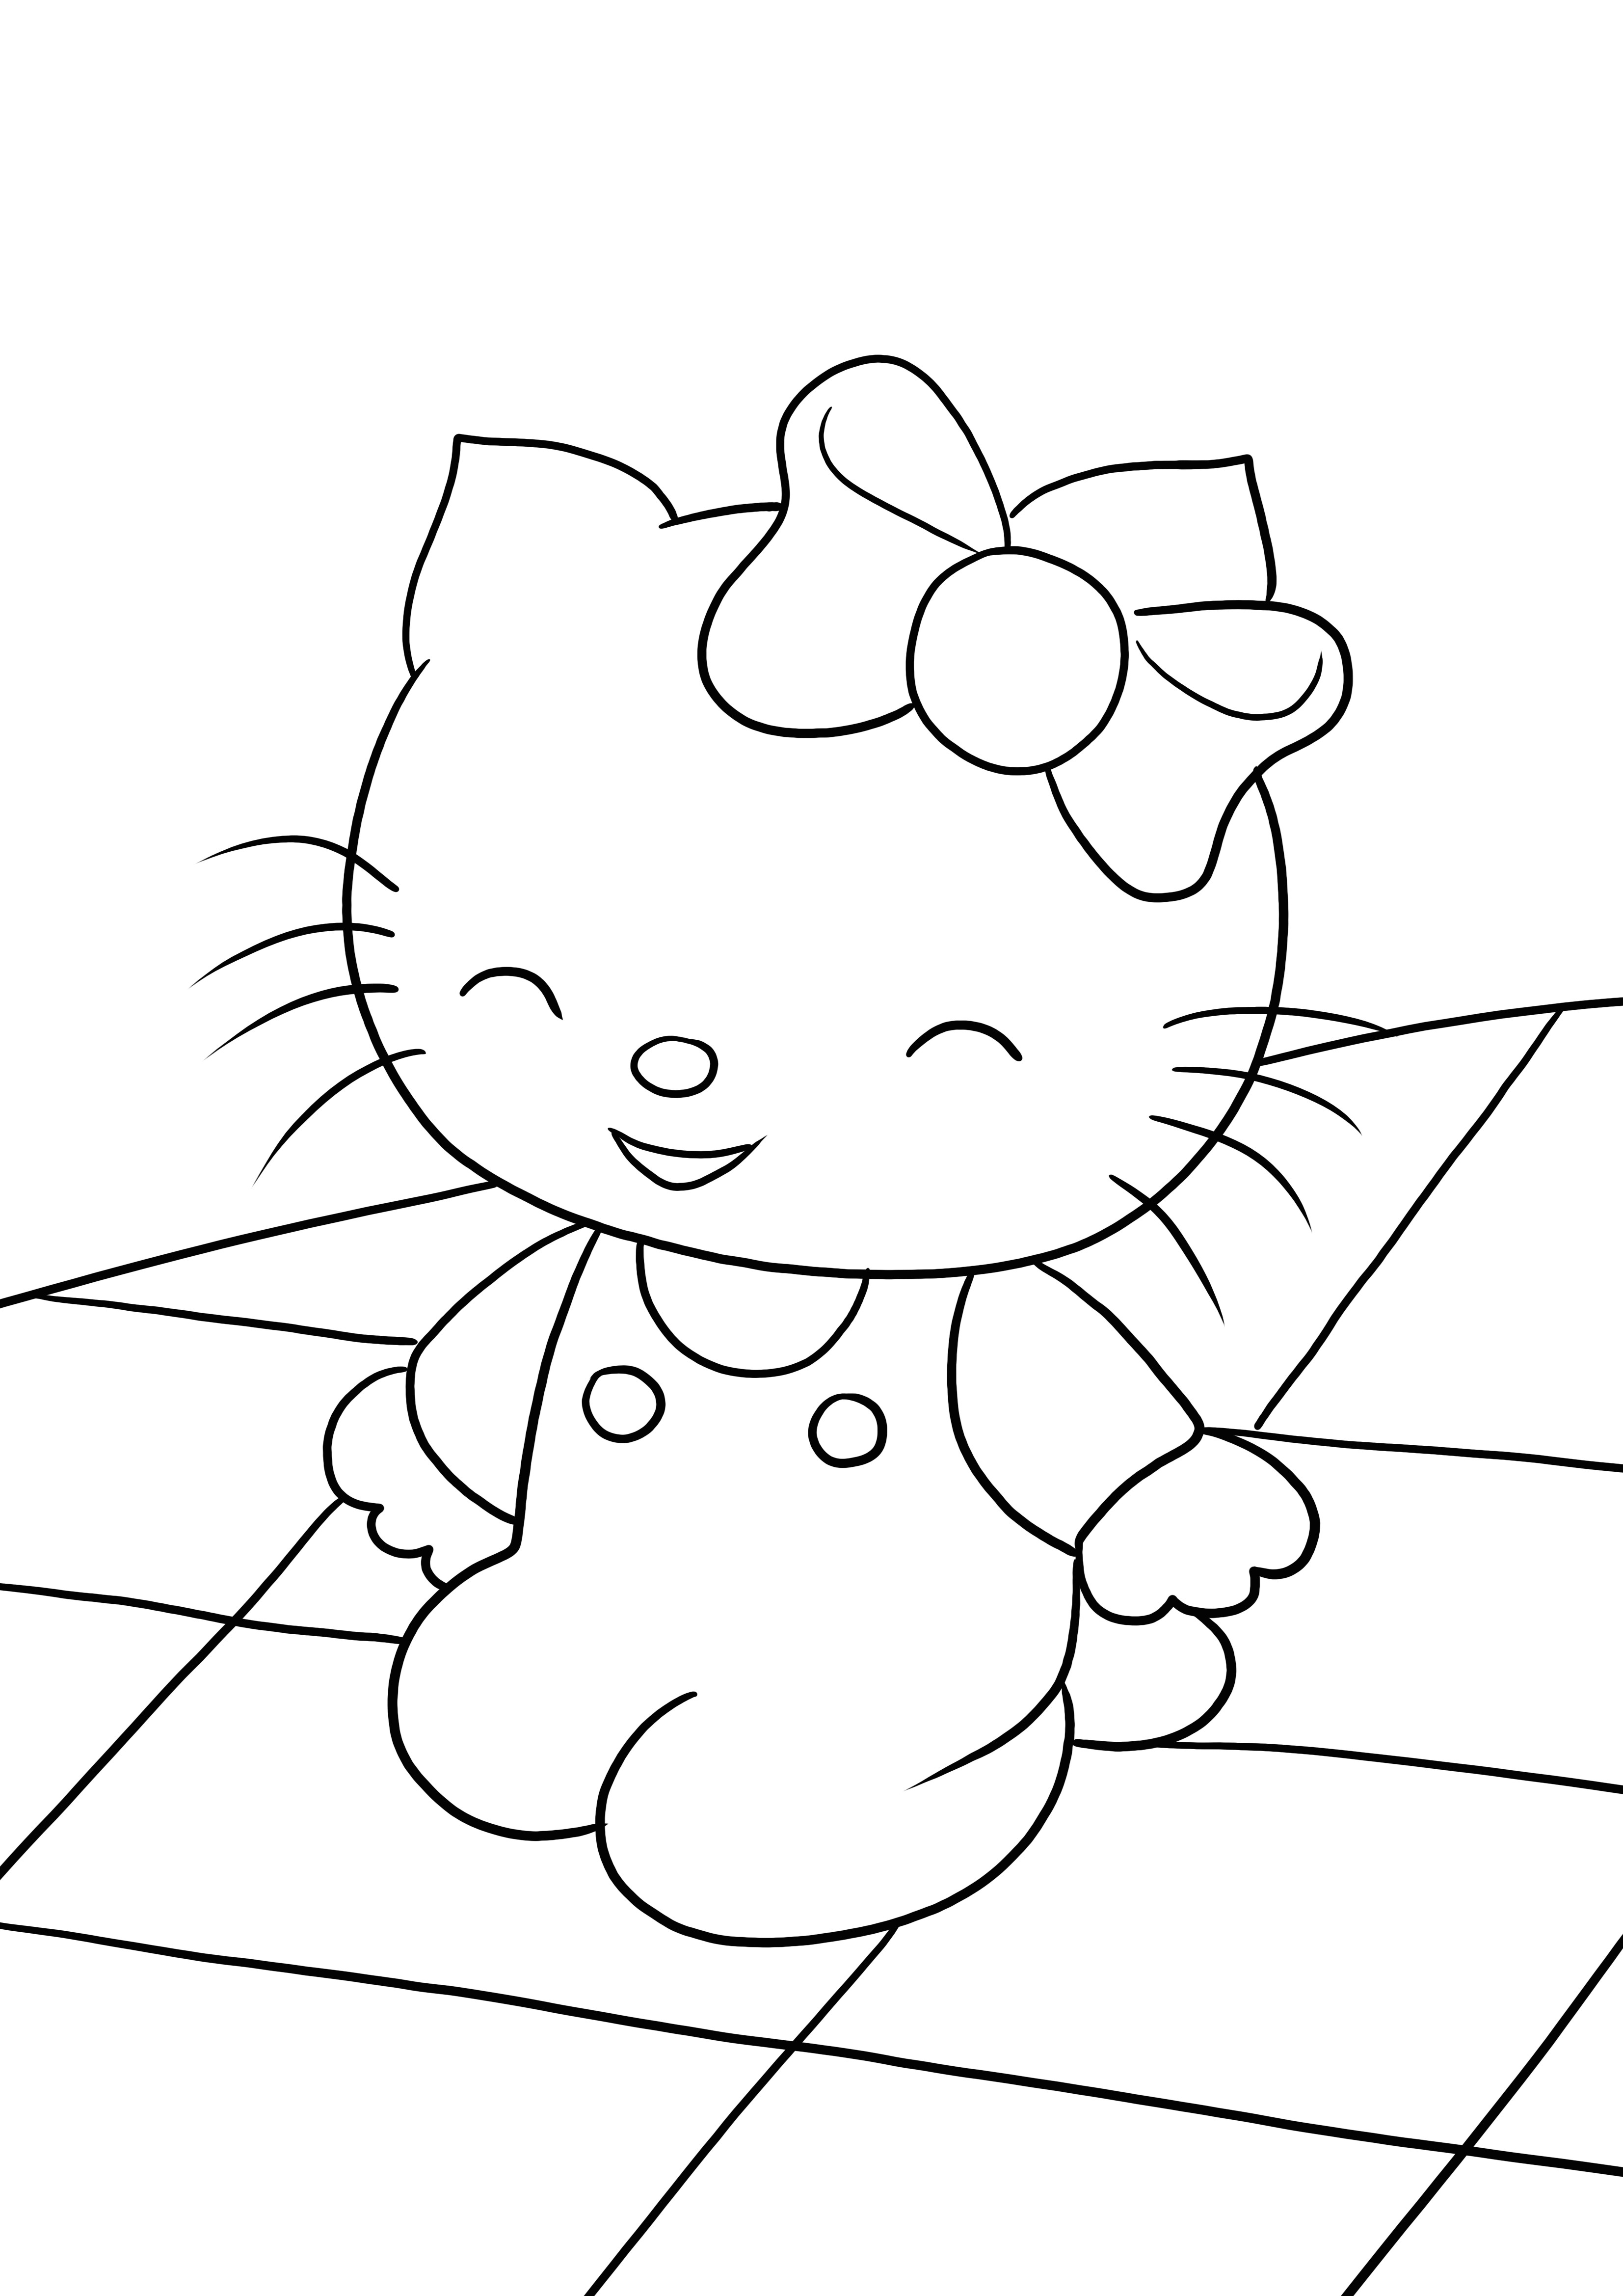 Il nostro Happy Hello Kitty è qui ed è pronto per essere colorato e stampato gratuitamente